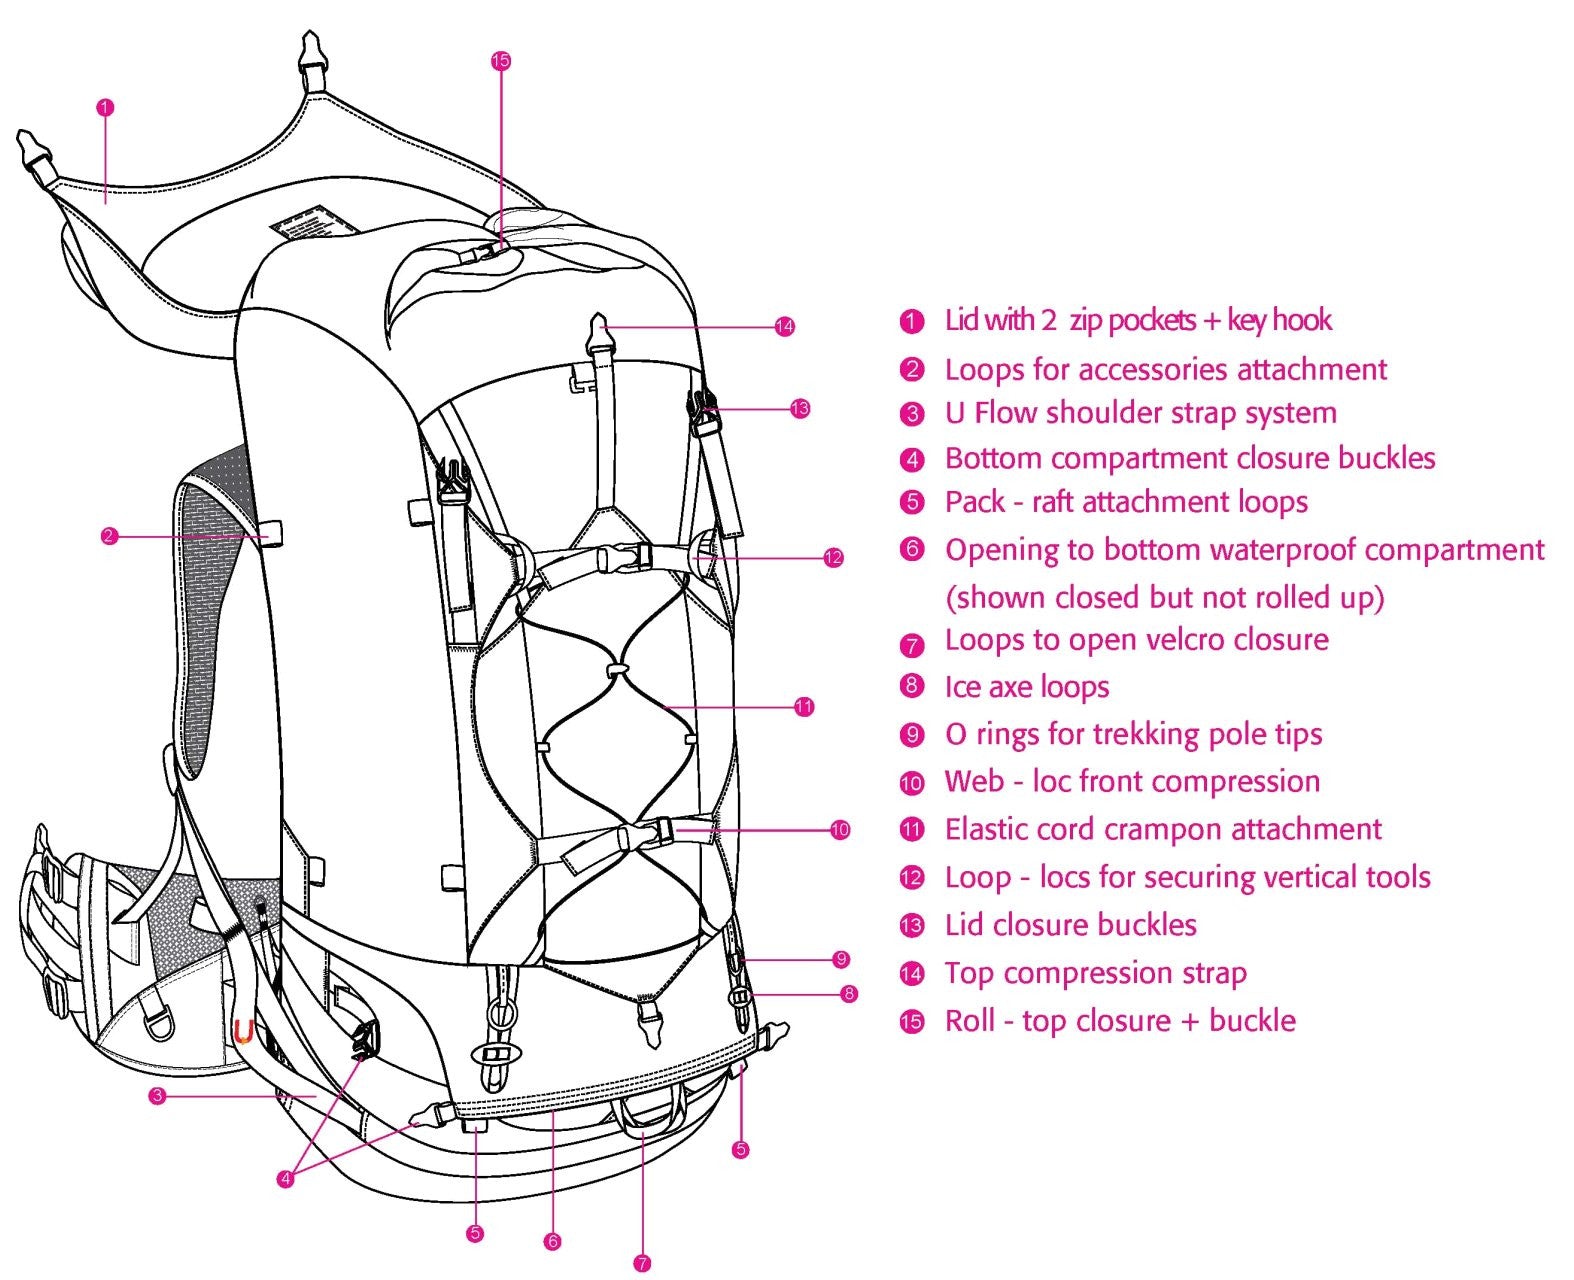 Design drawing of Effortless Rhythm backpack